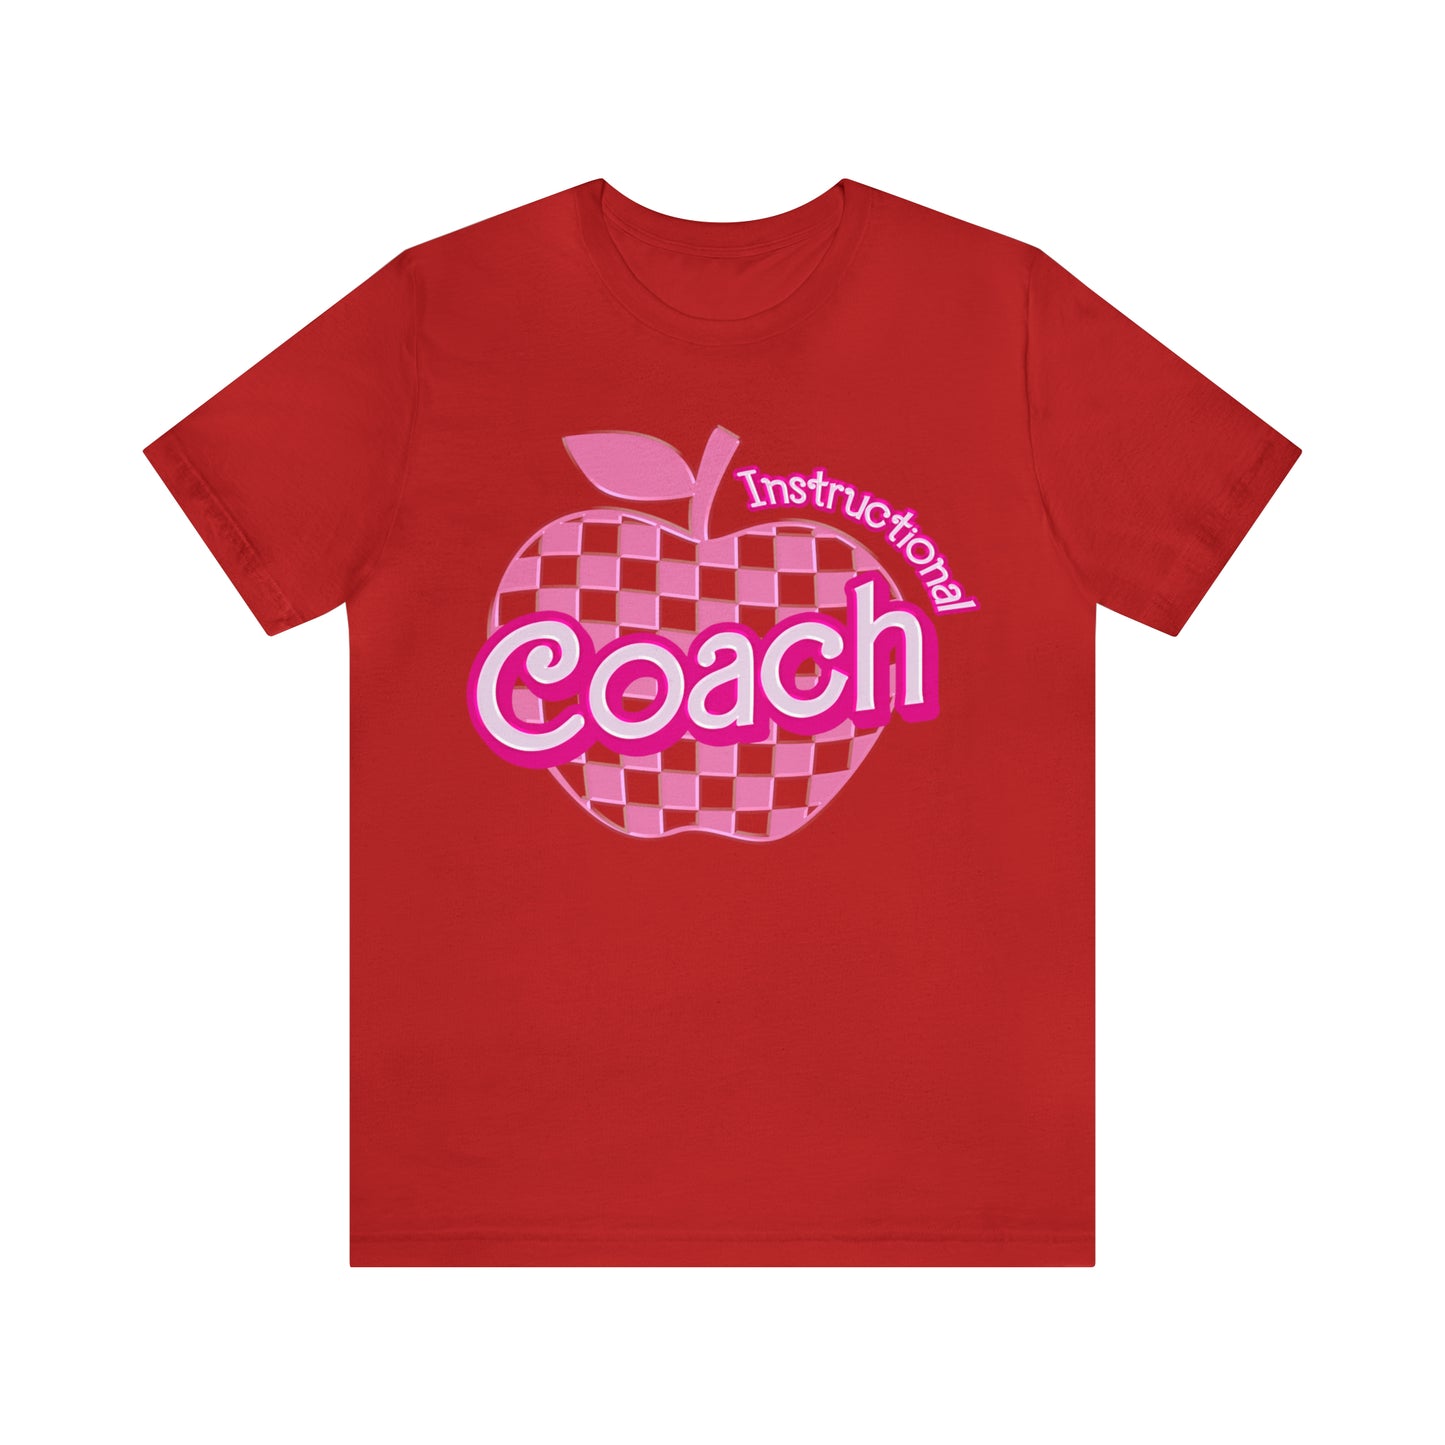 Instructional Coach shirt, Pink Sport Coach Shirt, Colorful Coaching shirt, 90s Cheer Coach shirt, Back To School Shirt, Teacher Gift, T819